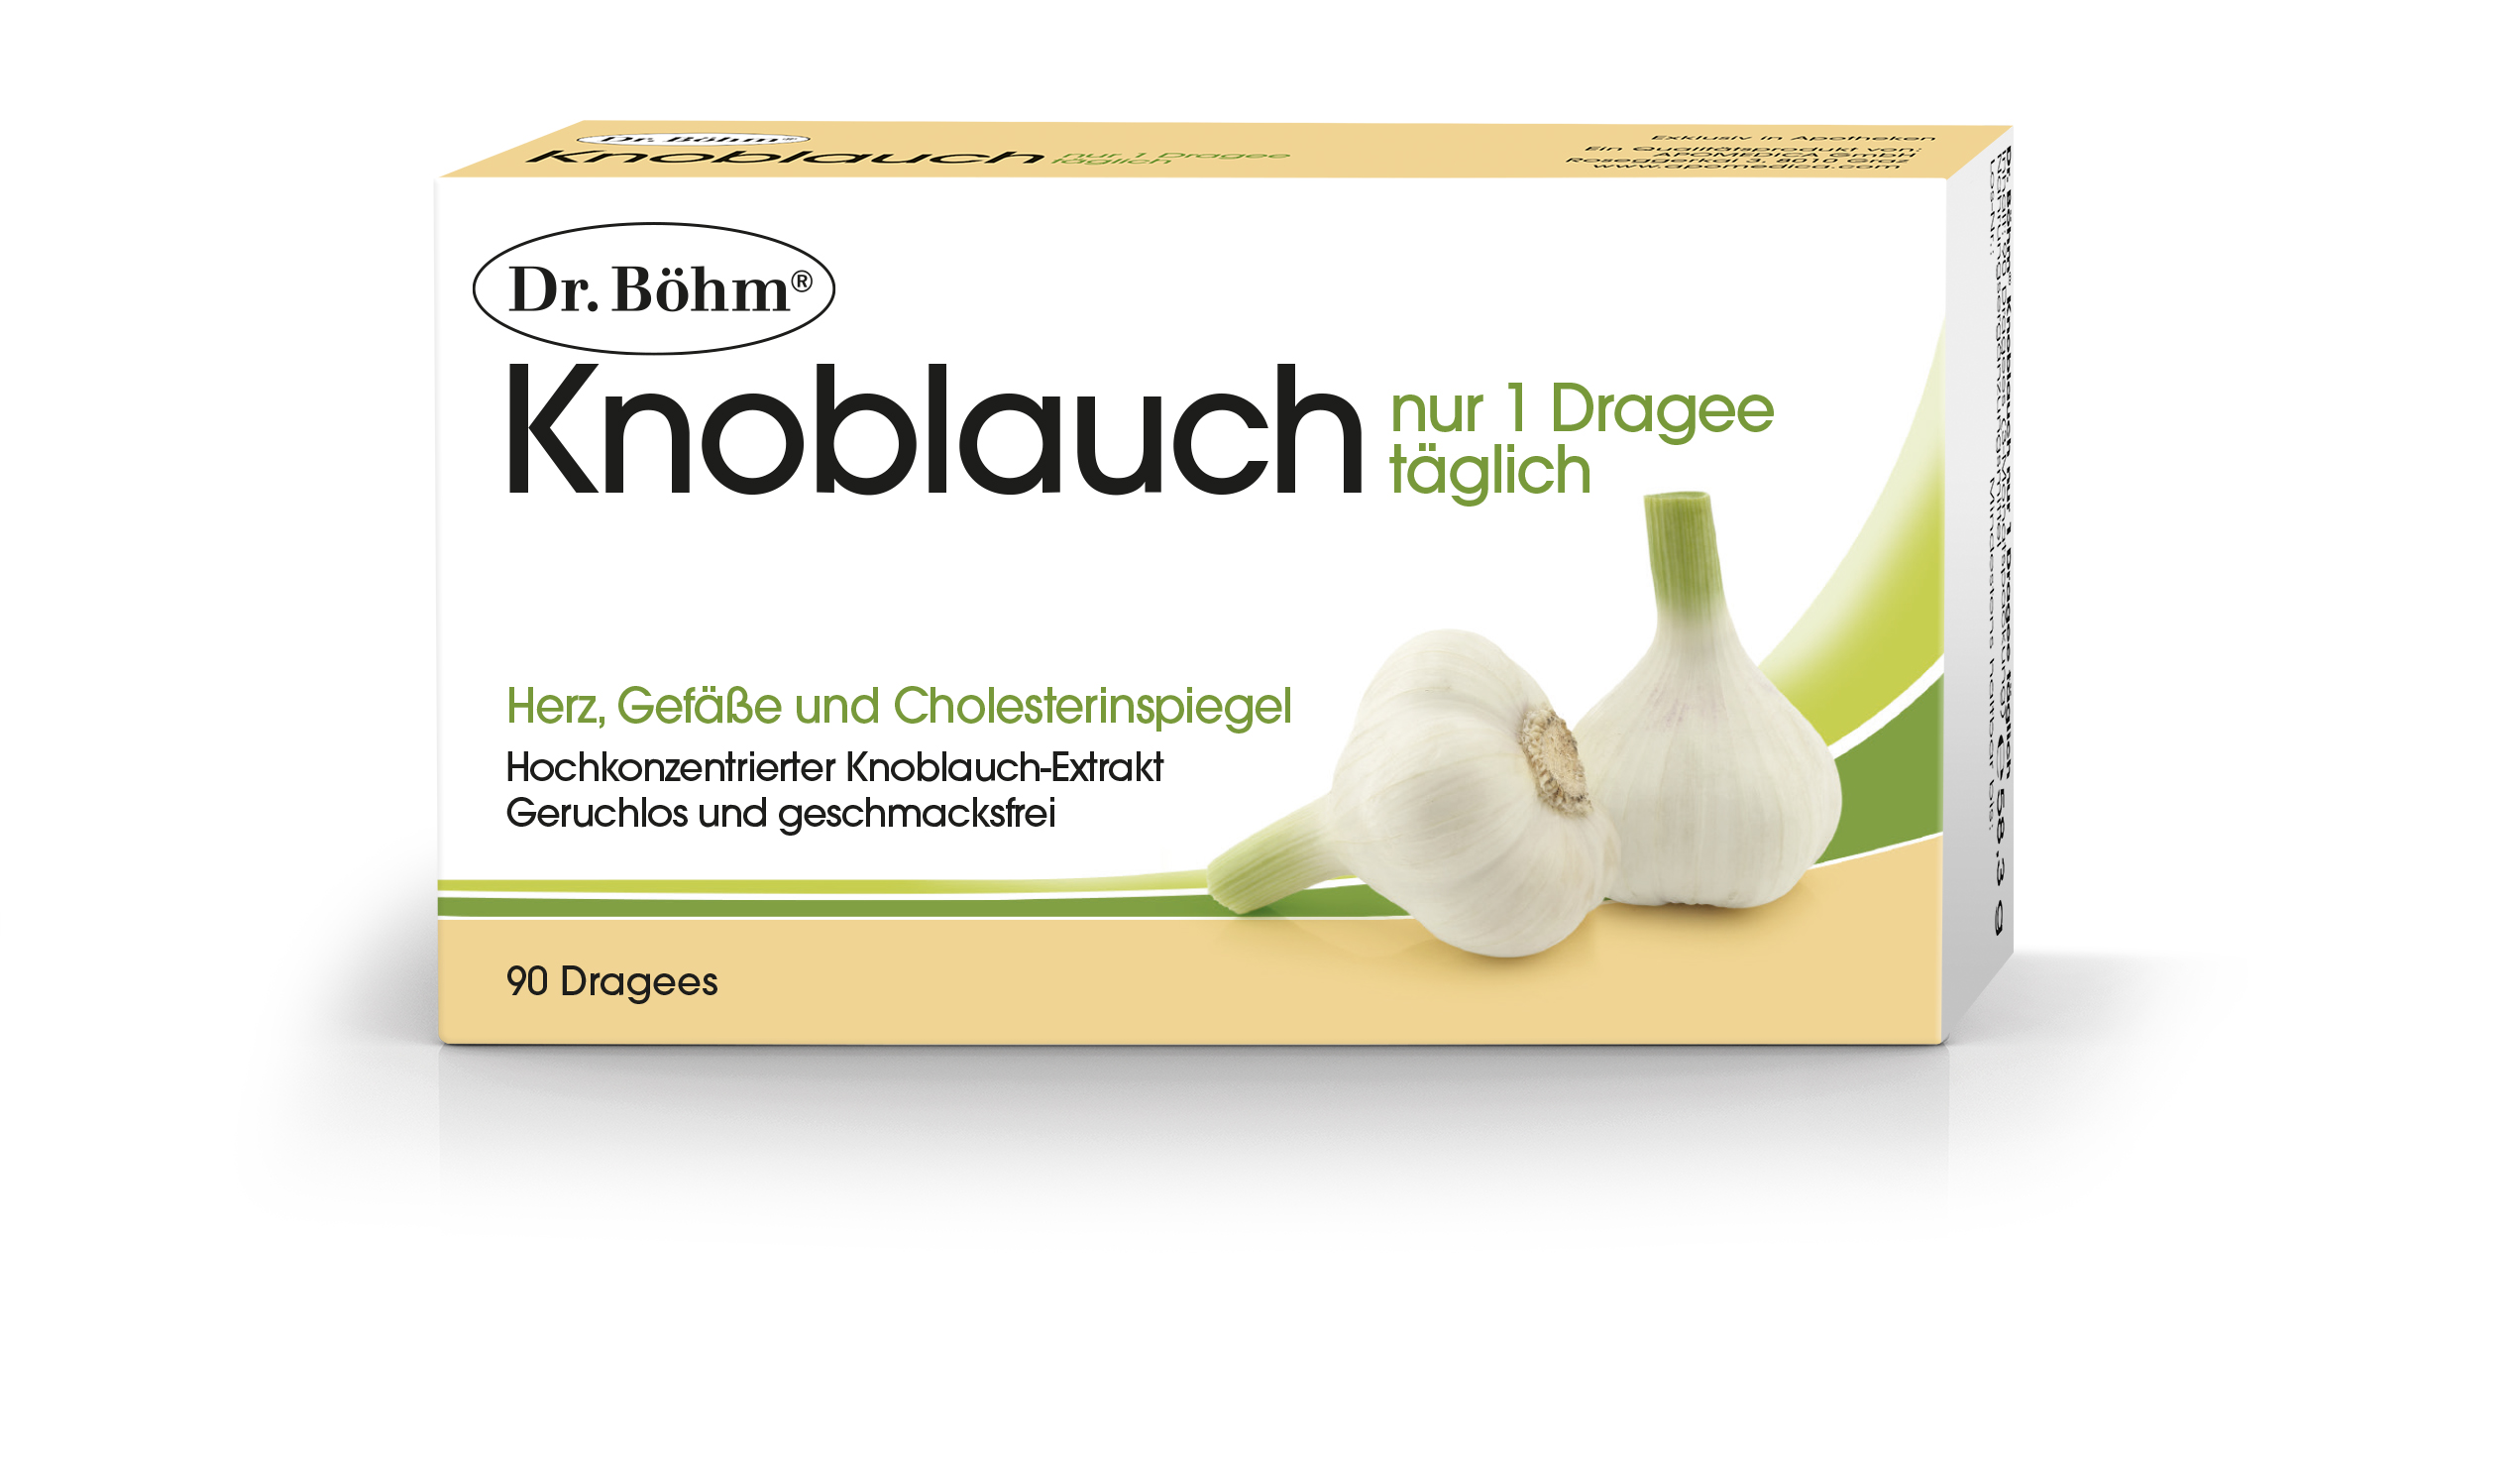 Dr. Böhm Knoblauch nur 1 Dragee täglich